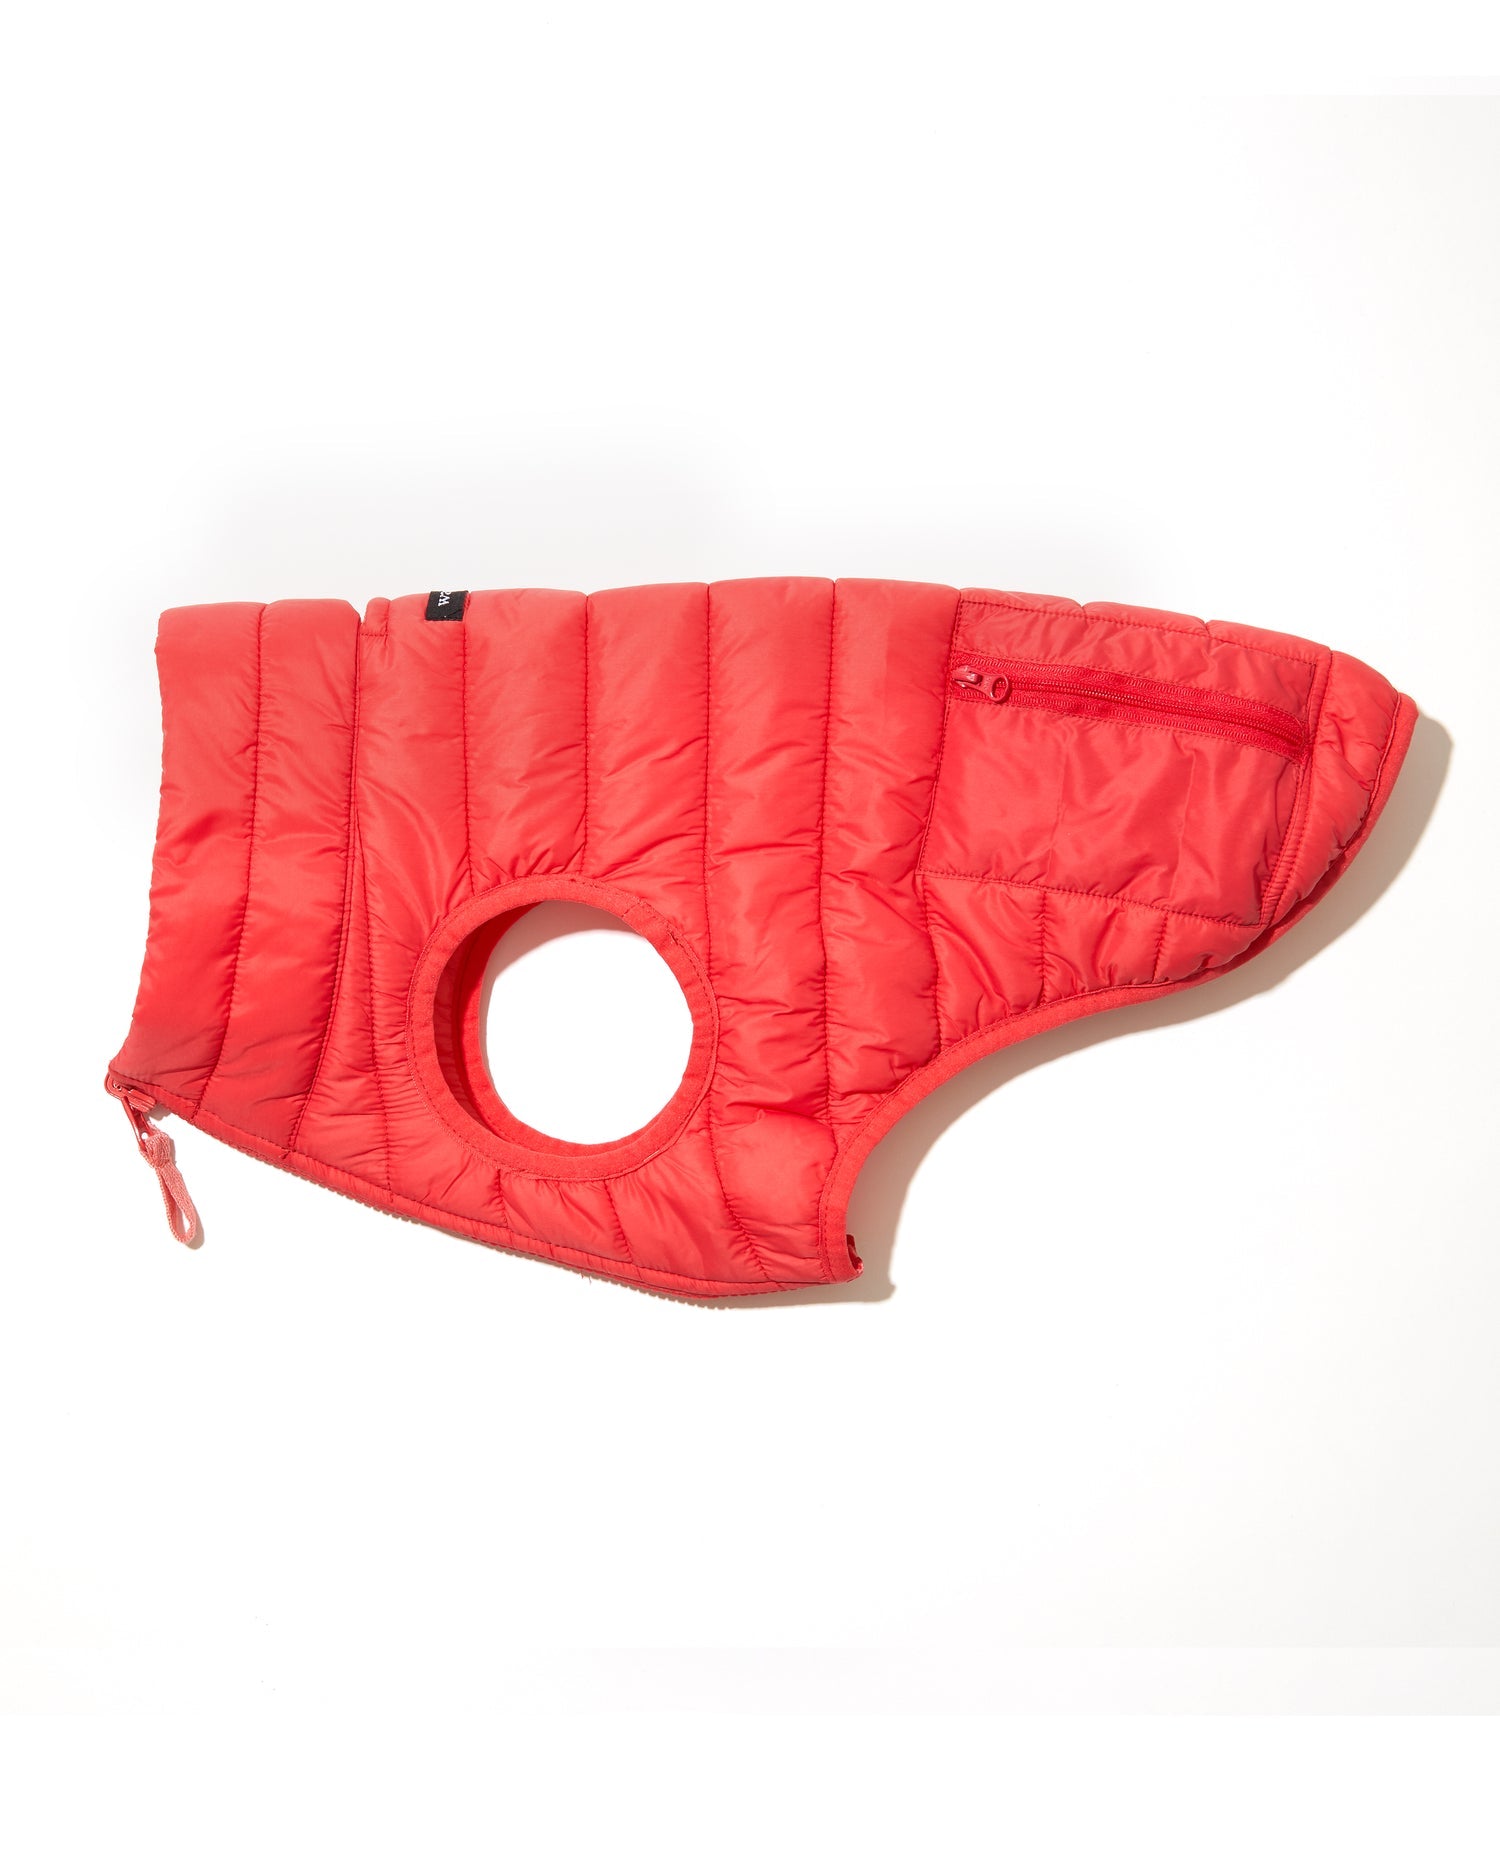 wagwear - Puffer Vest Red/Pink - Henlo Pets